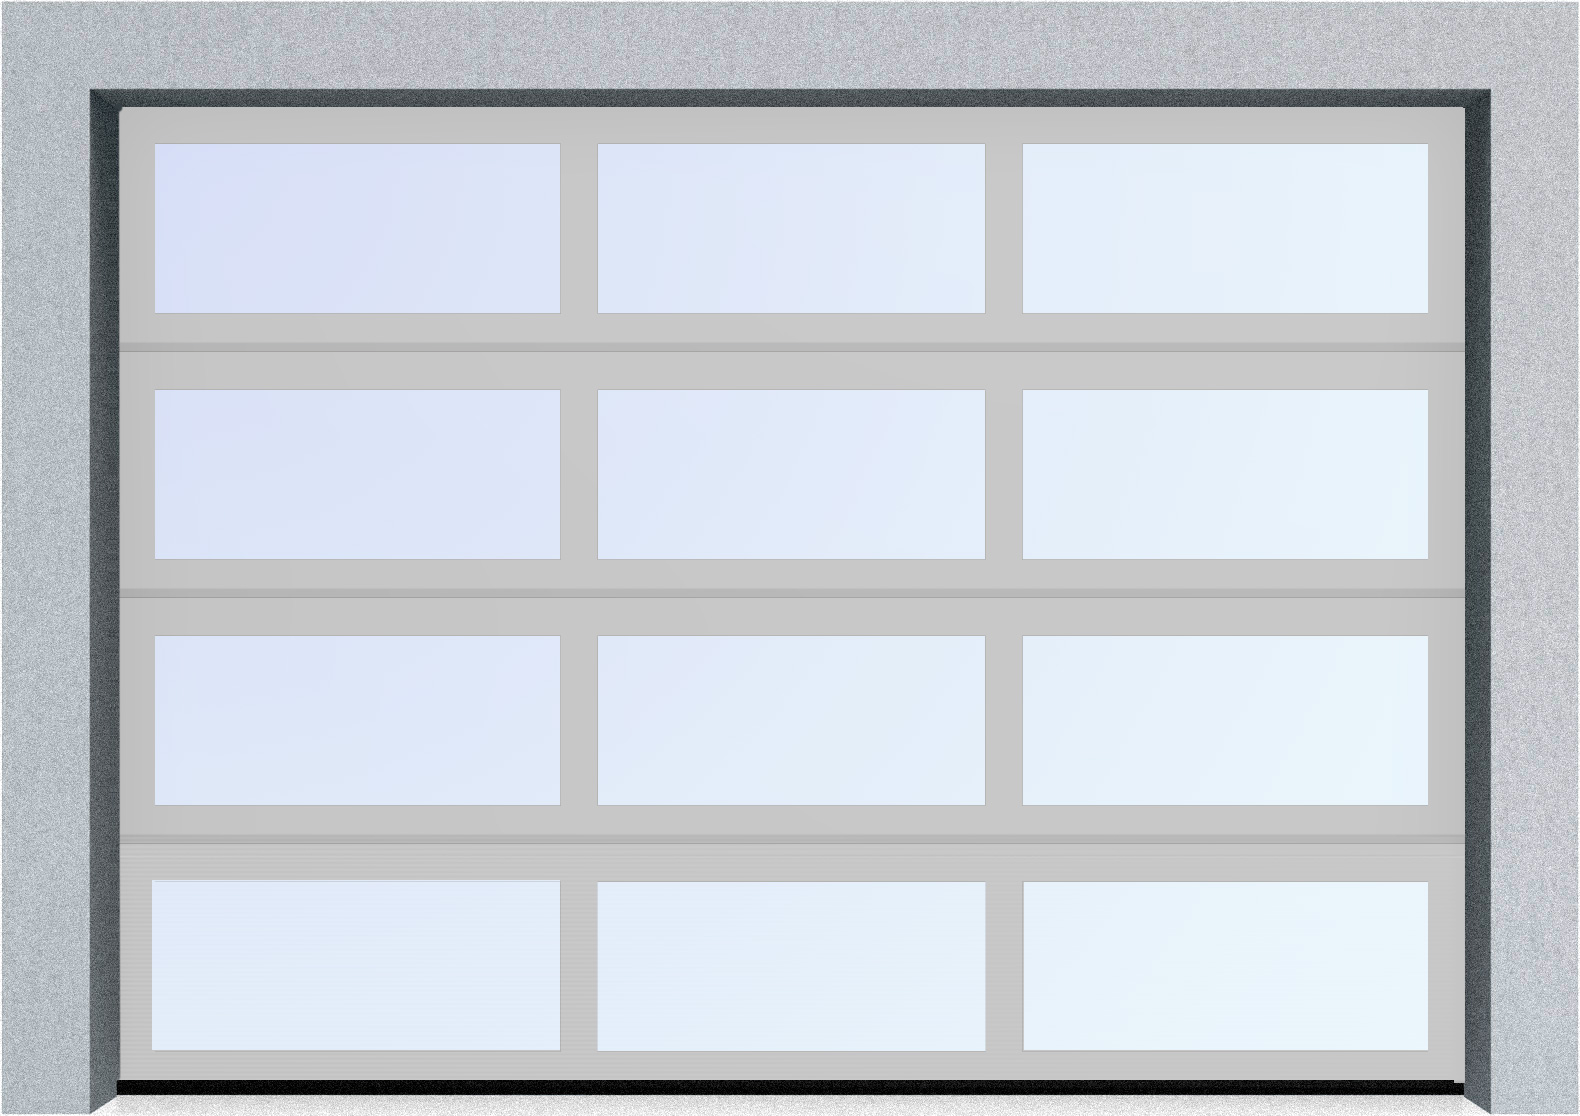  Секционные панорамные ворота серии AluTrend (АЛП) 2250х2375 нижняя панель стандартные цвета, фото 8 